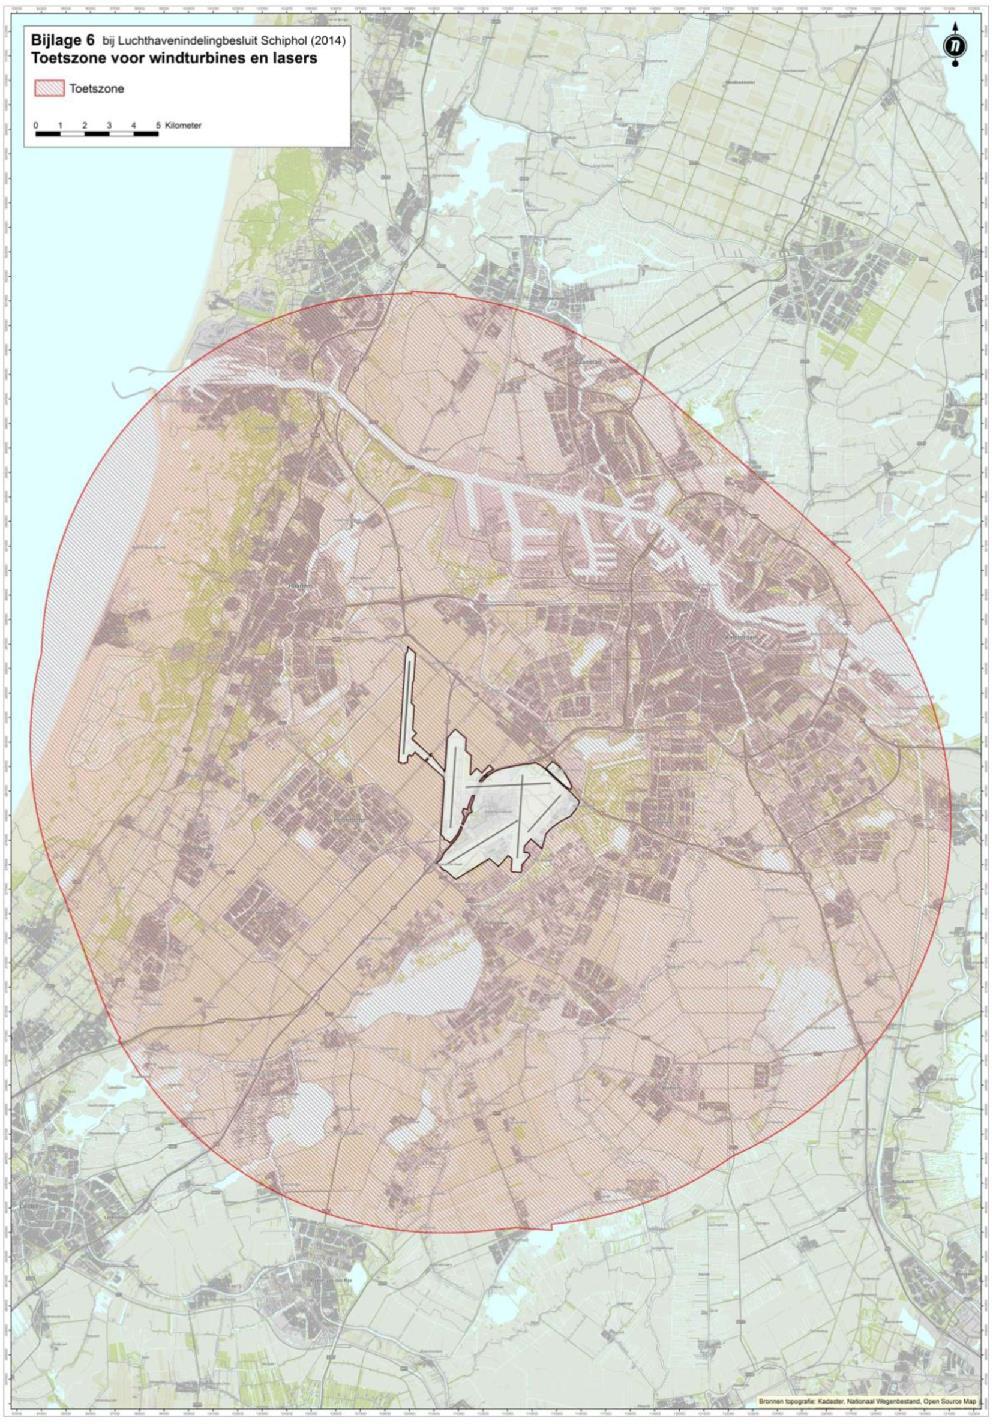 TNO RAPPORT PERSEUS 2018 18 / 51 Figuur 15: Bijlage 6 van de LIB Schiphol, met de zone waarbinnen een bouwbeperking geldt voor windturbines met een ashoogte van hoger dan